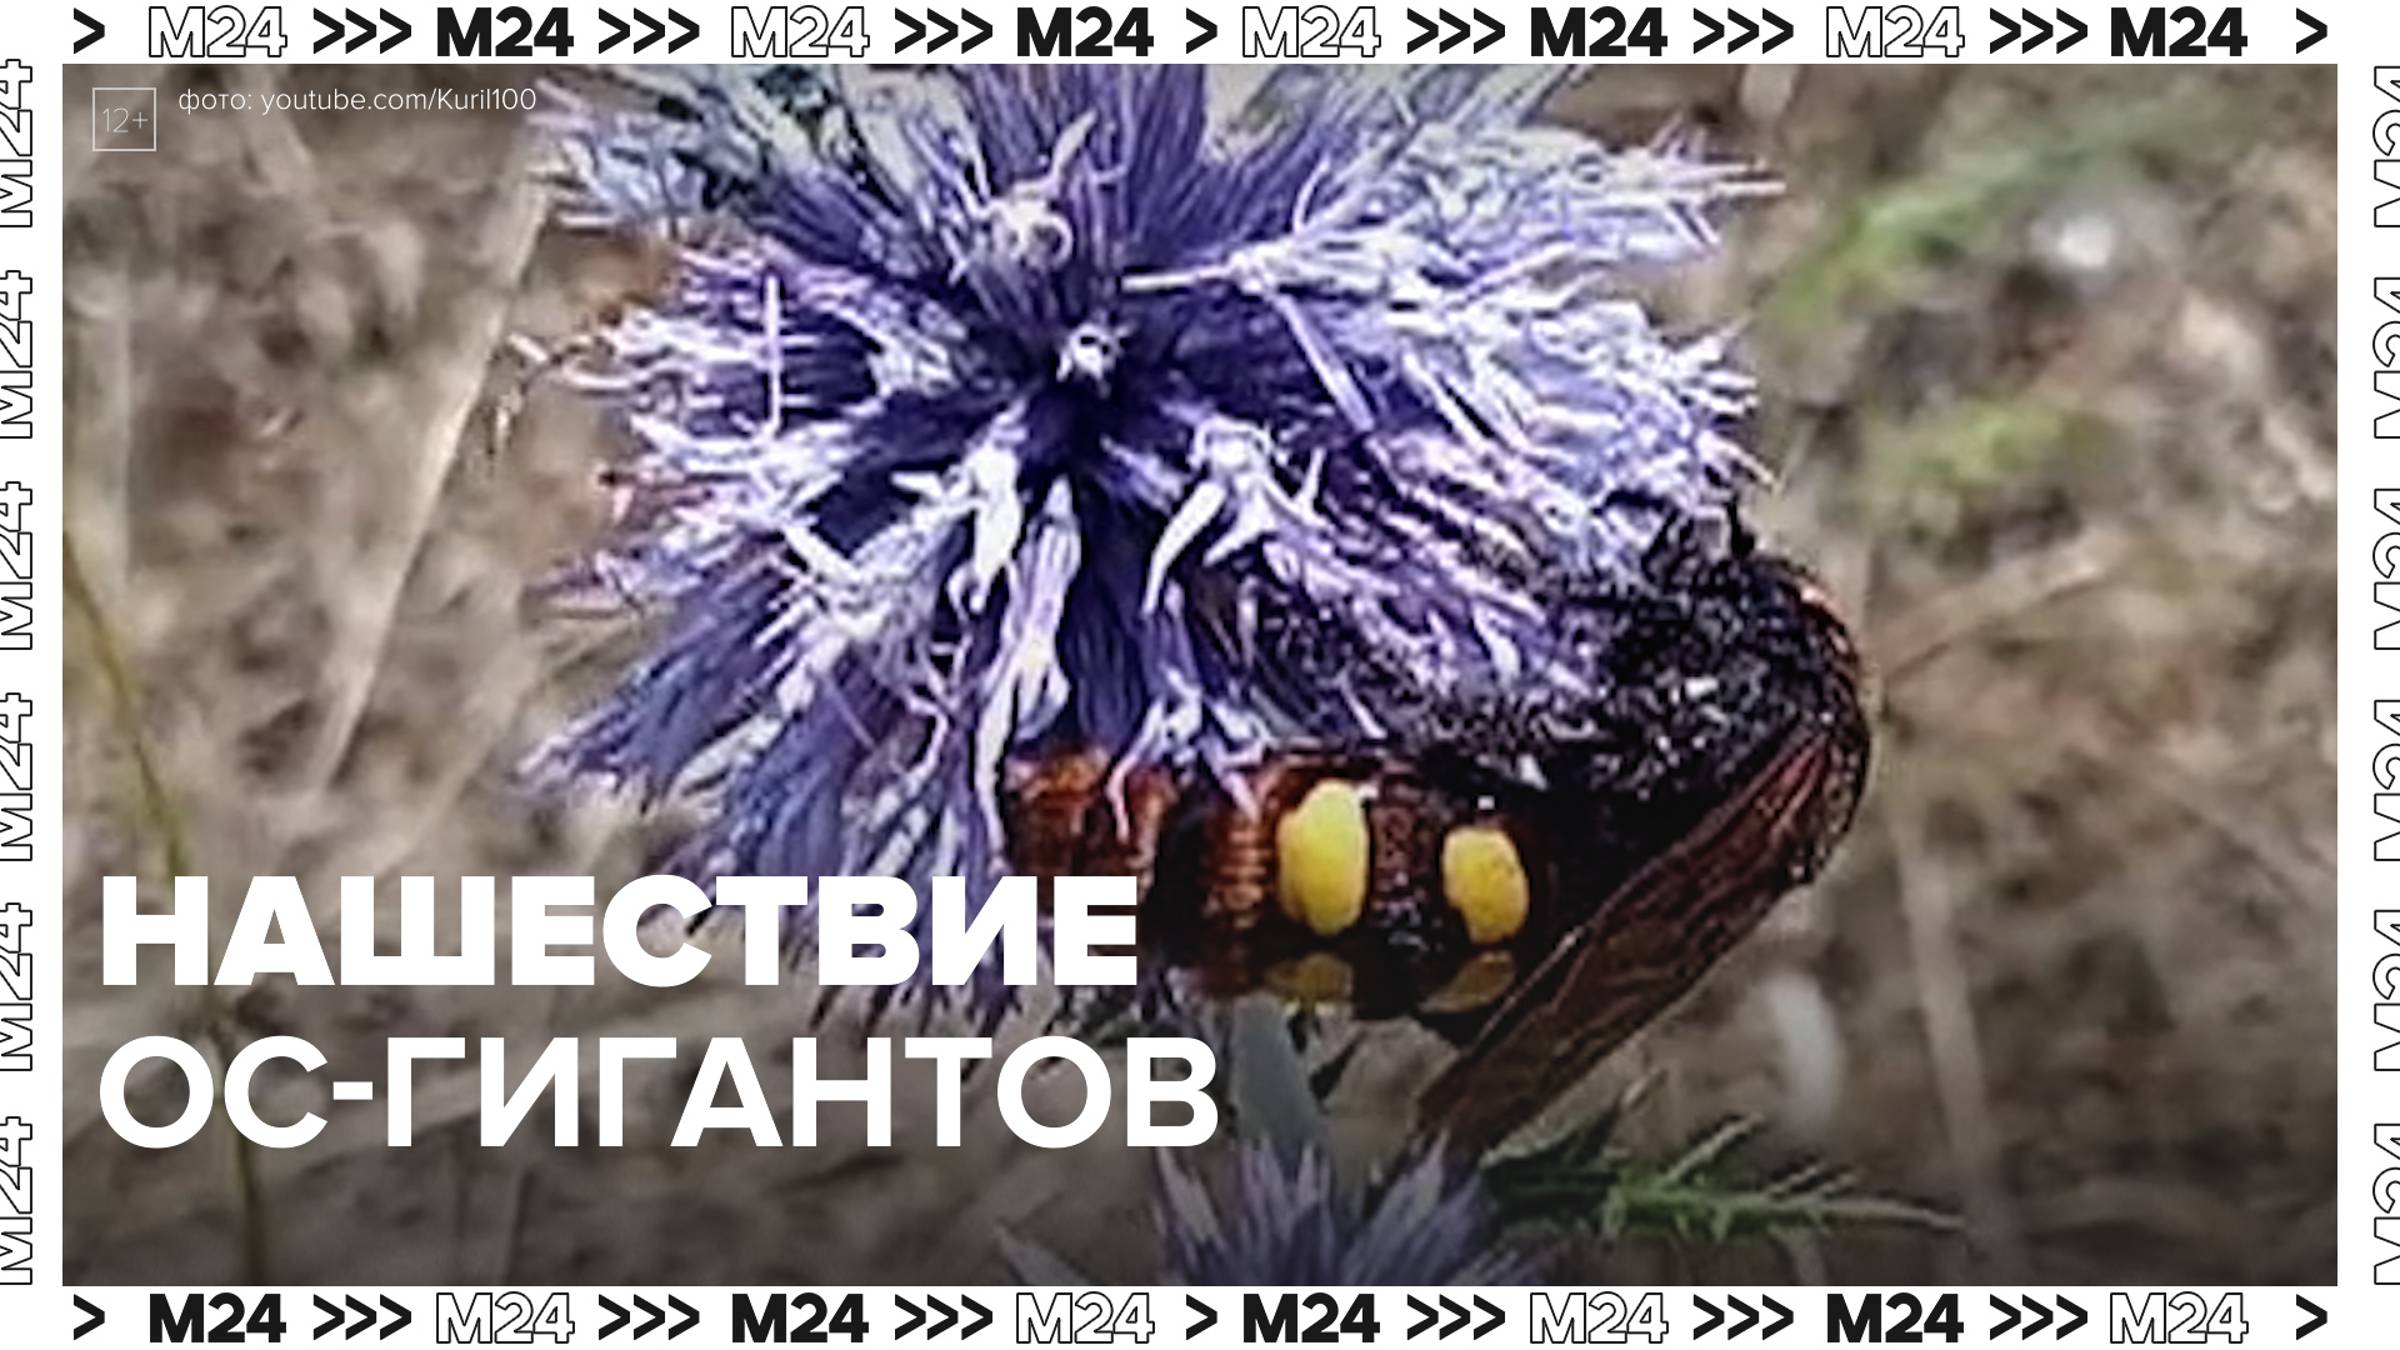 Нашествие ос-гигантов отметили жители Подмосковья — Москва24|Контент